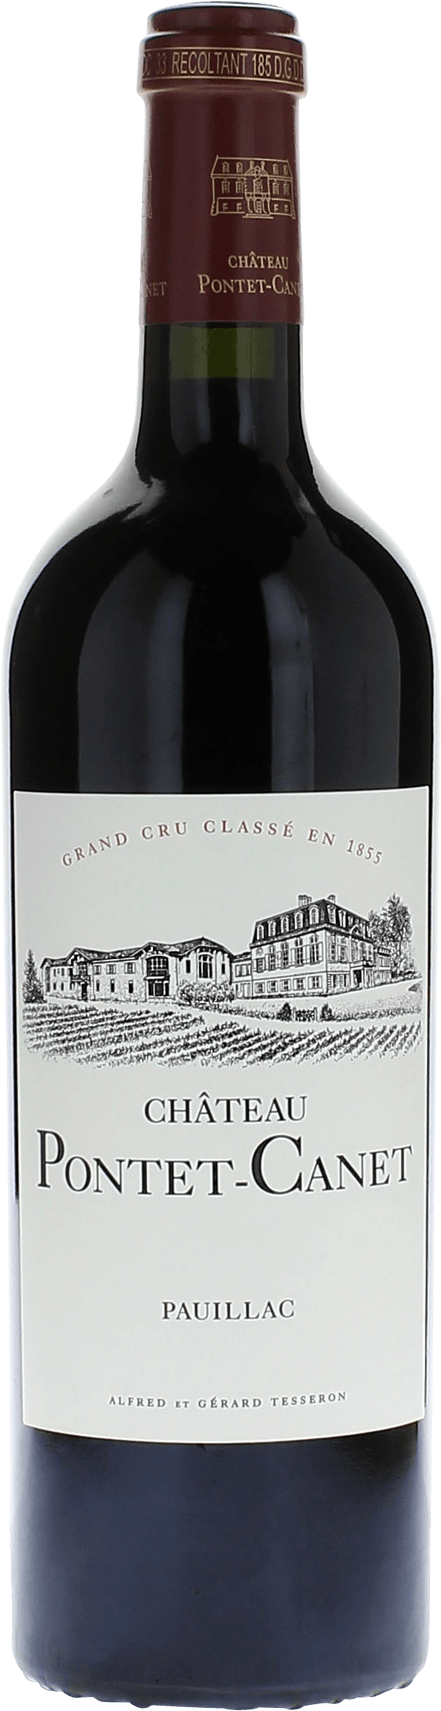 Pontet canet 2014 5me Grand cru class Pauillac, Bordeaux rouge